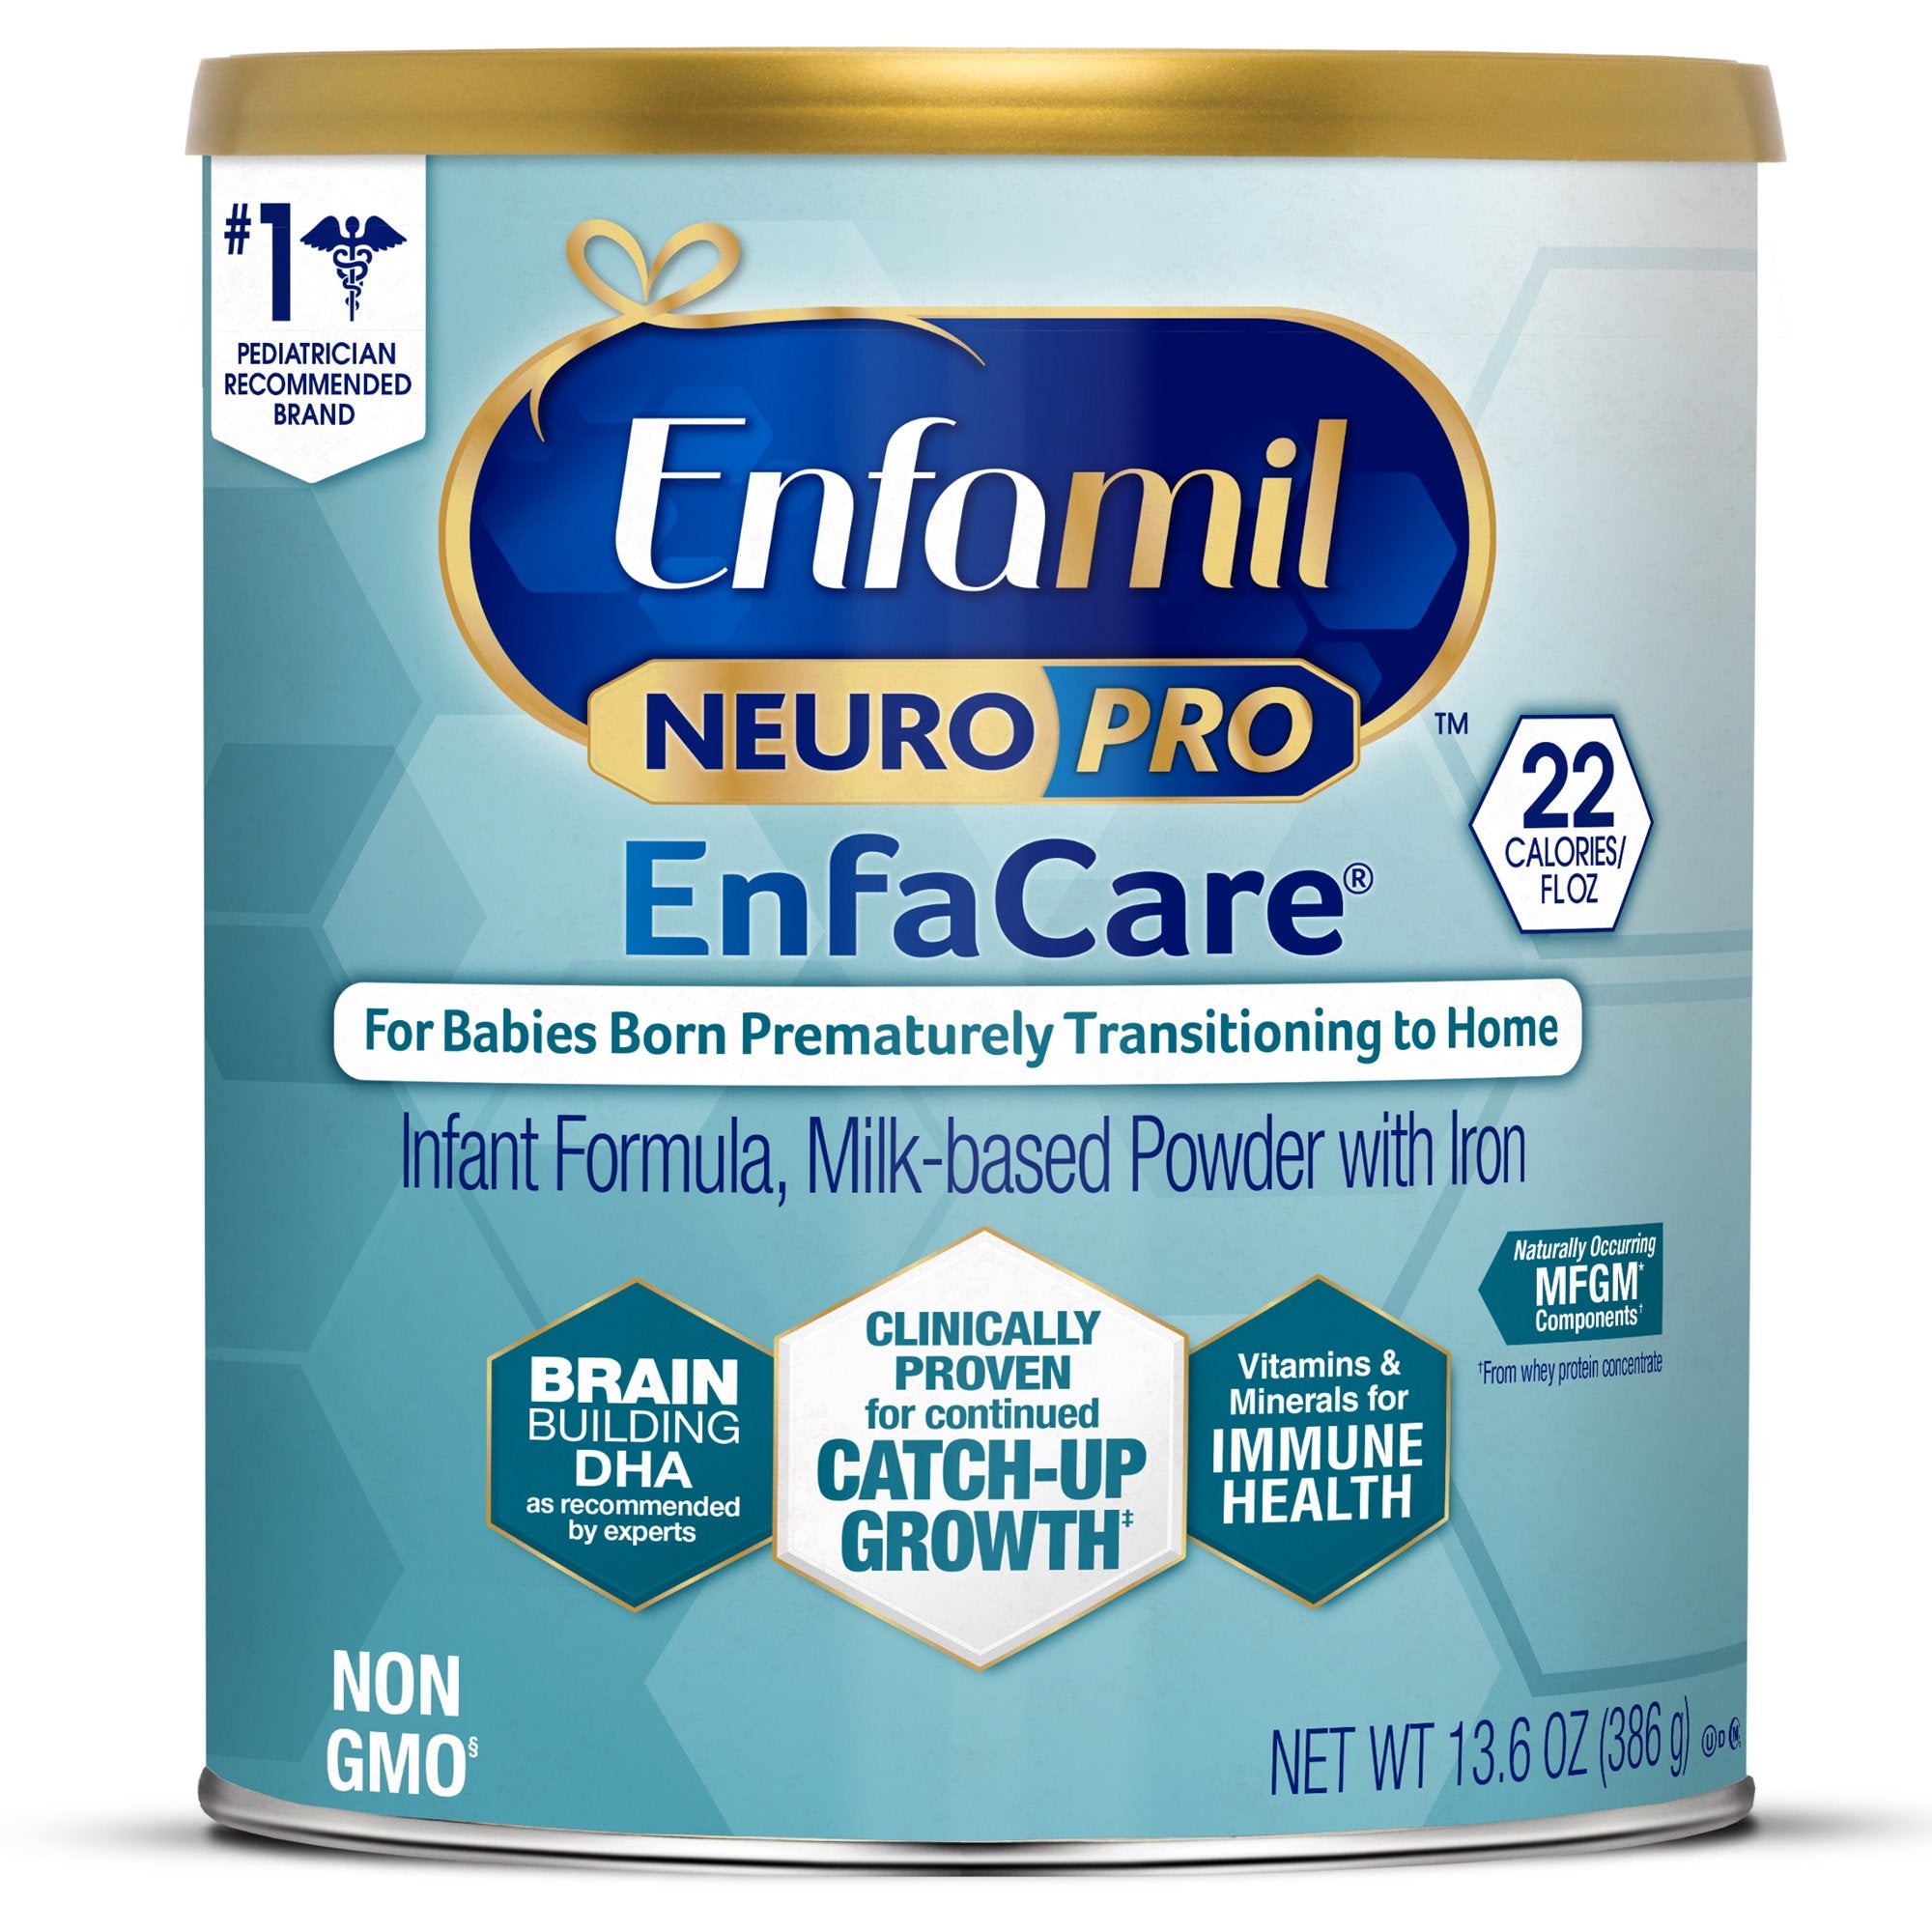 Enfamil® NeuroPro™ Enfacare® Infant Formula, Powder, 12.8-ounce Can (1 Unit)